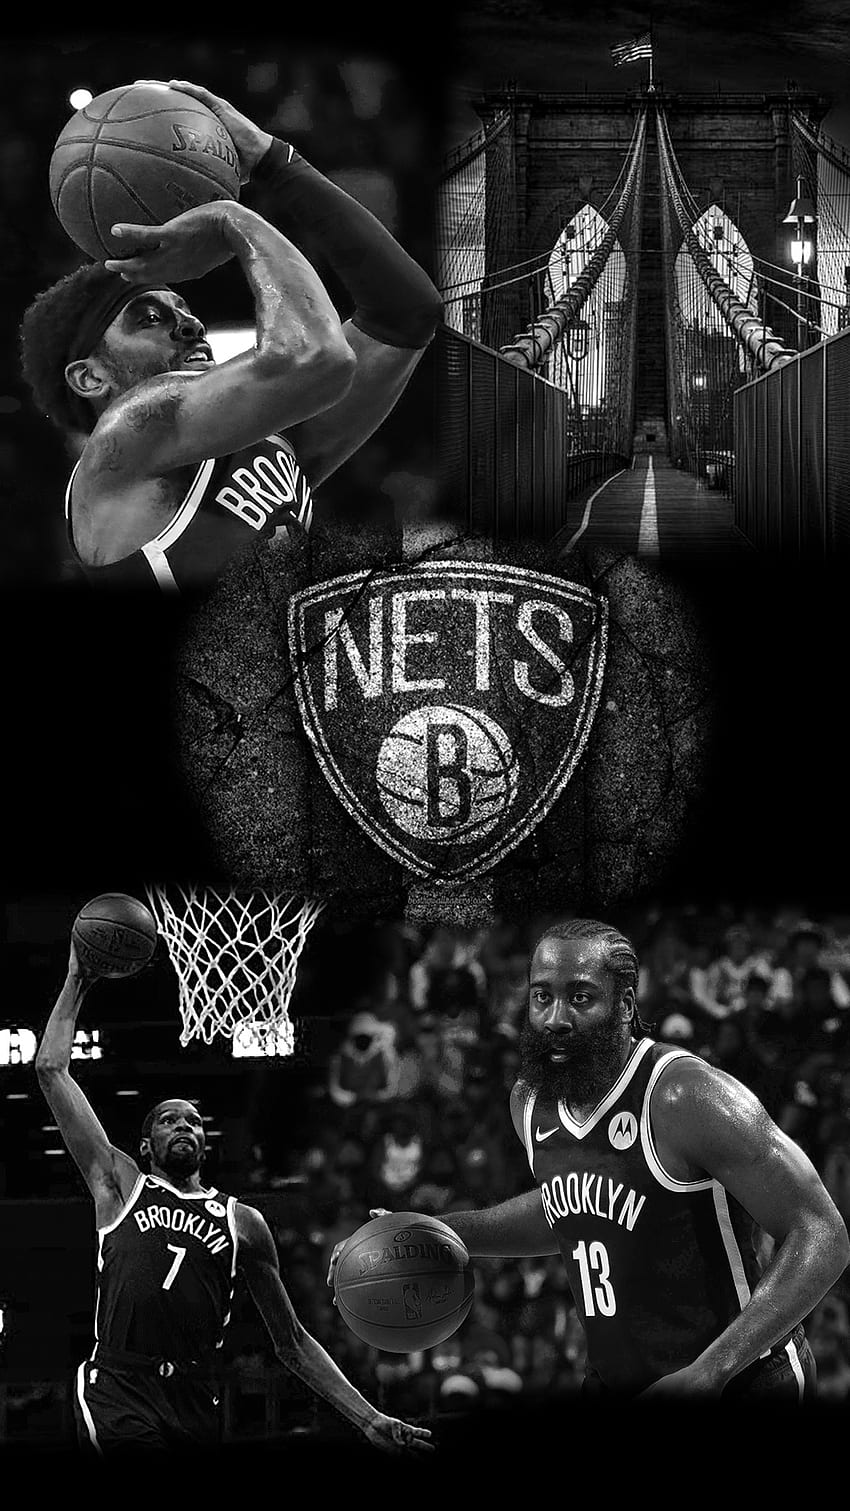 Brooklyn Nets 1080P, 2K, 4K, 5K HD wallpapers free download